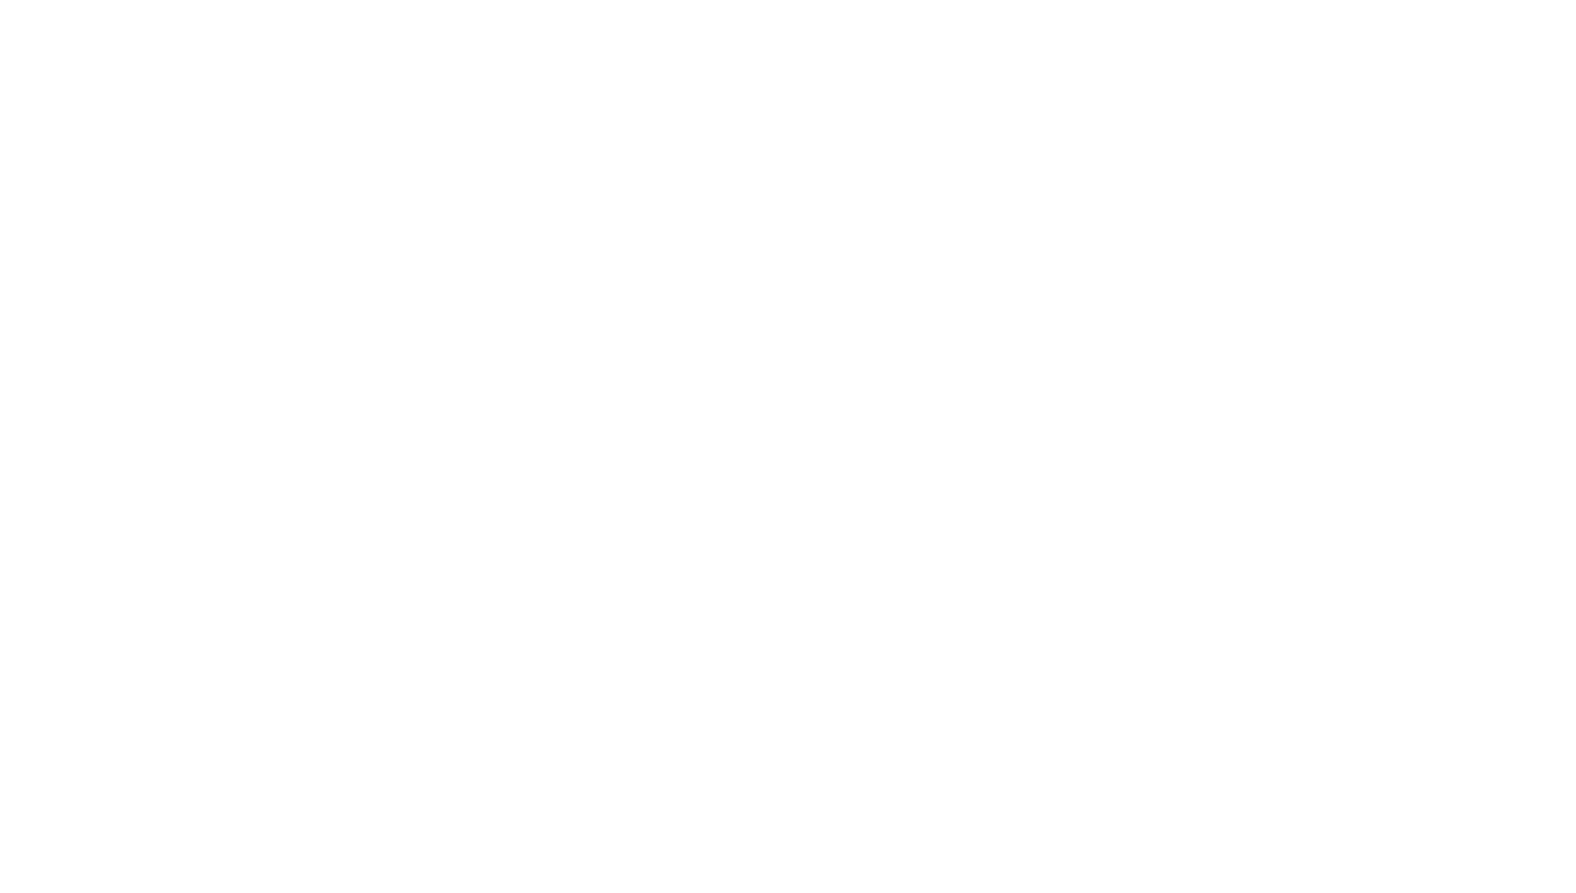 M1 Kliniken AG logo pour fonds sombres (PNG transparent)